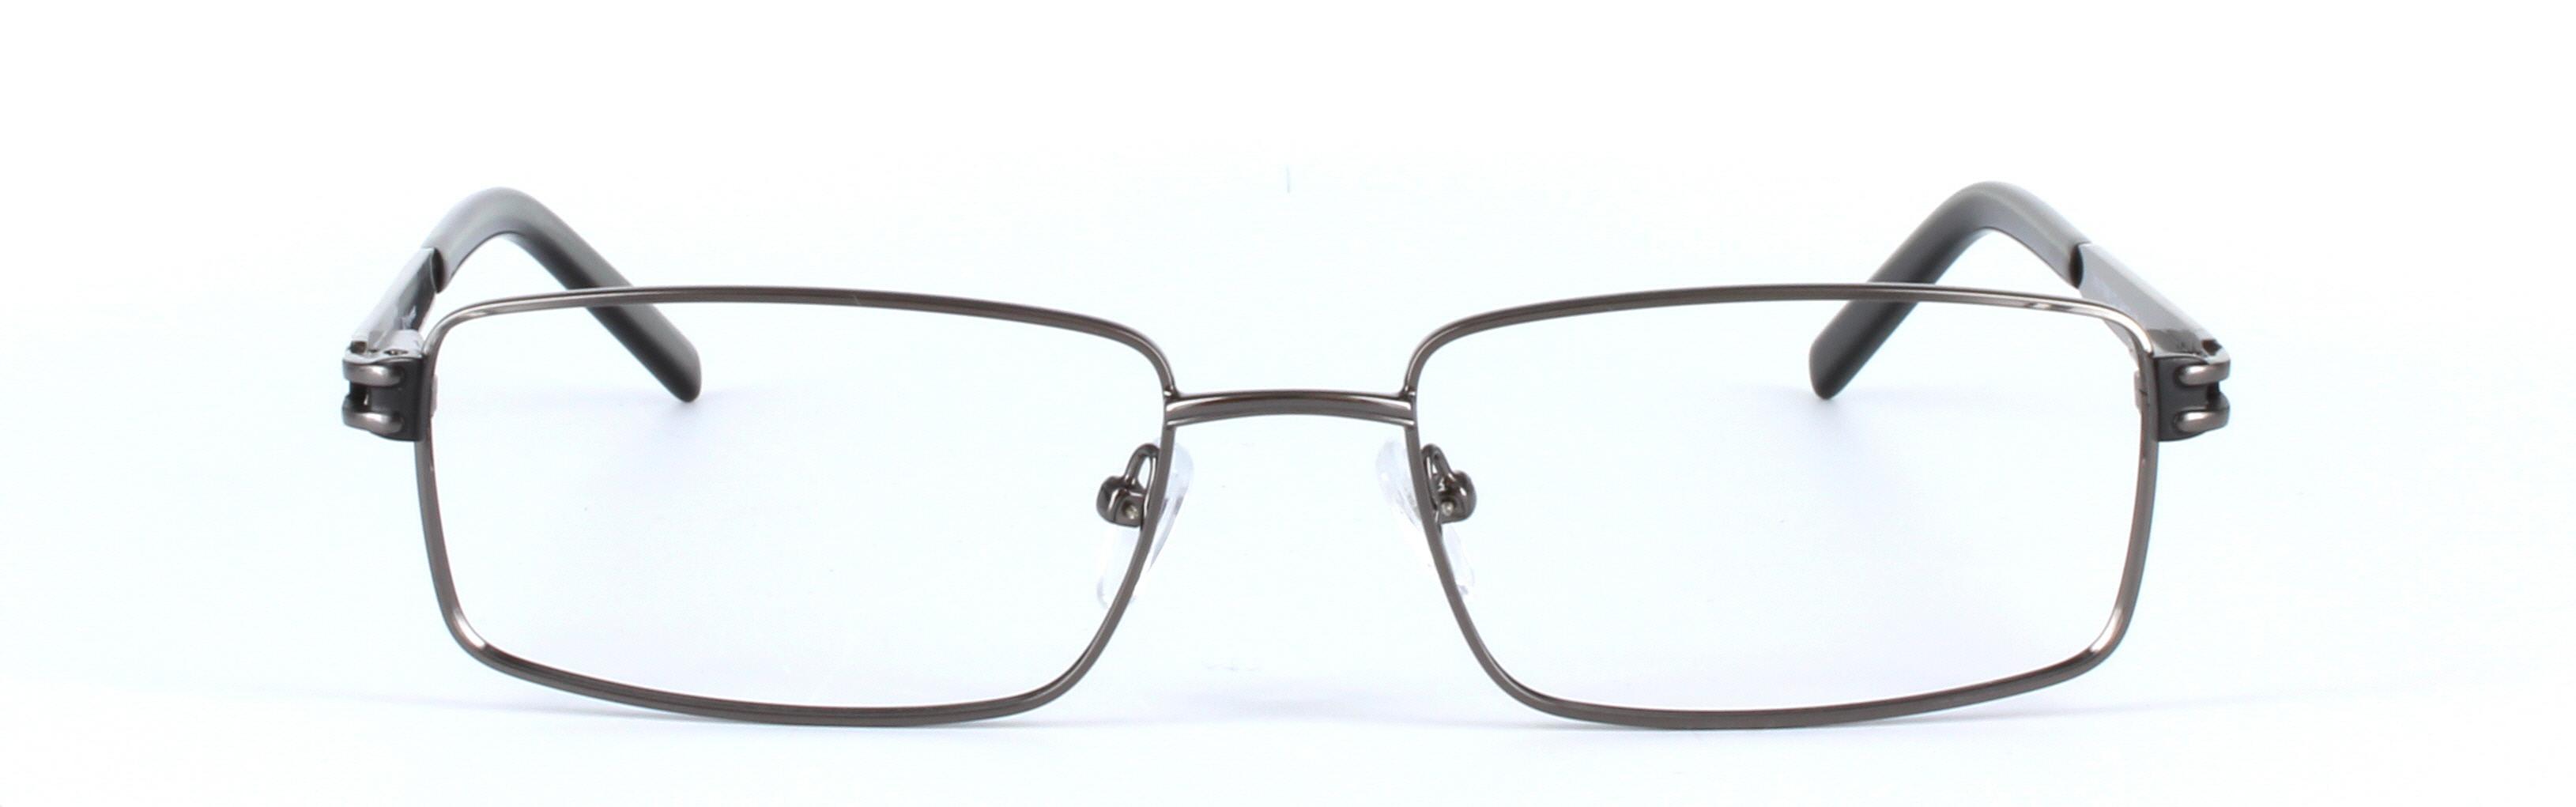 Gunmetal Full Rim Rectangular Metal Glasses Varna - Image View 5